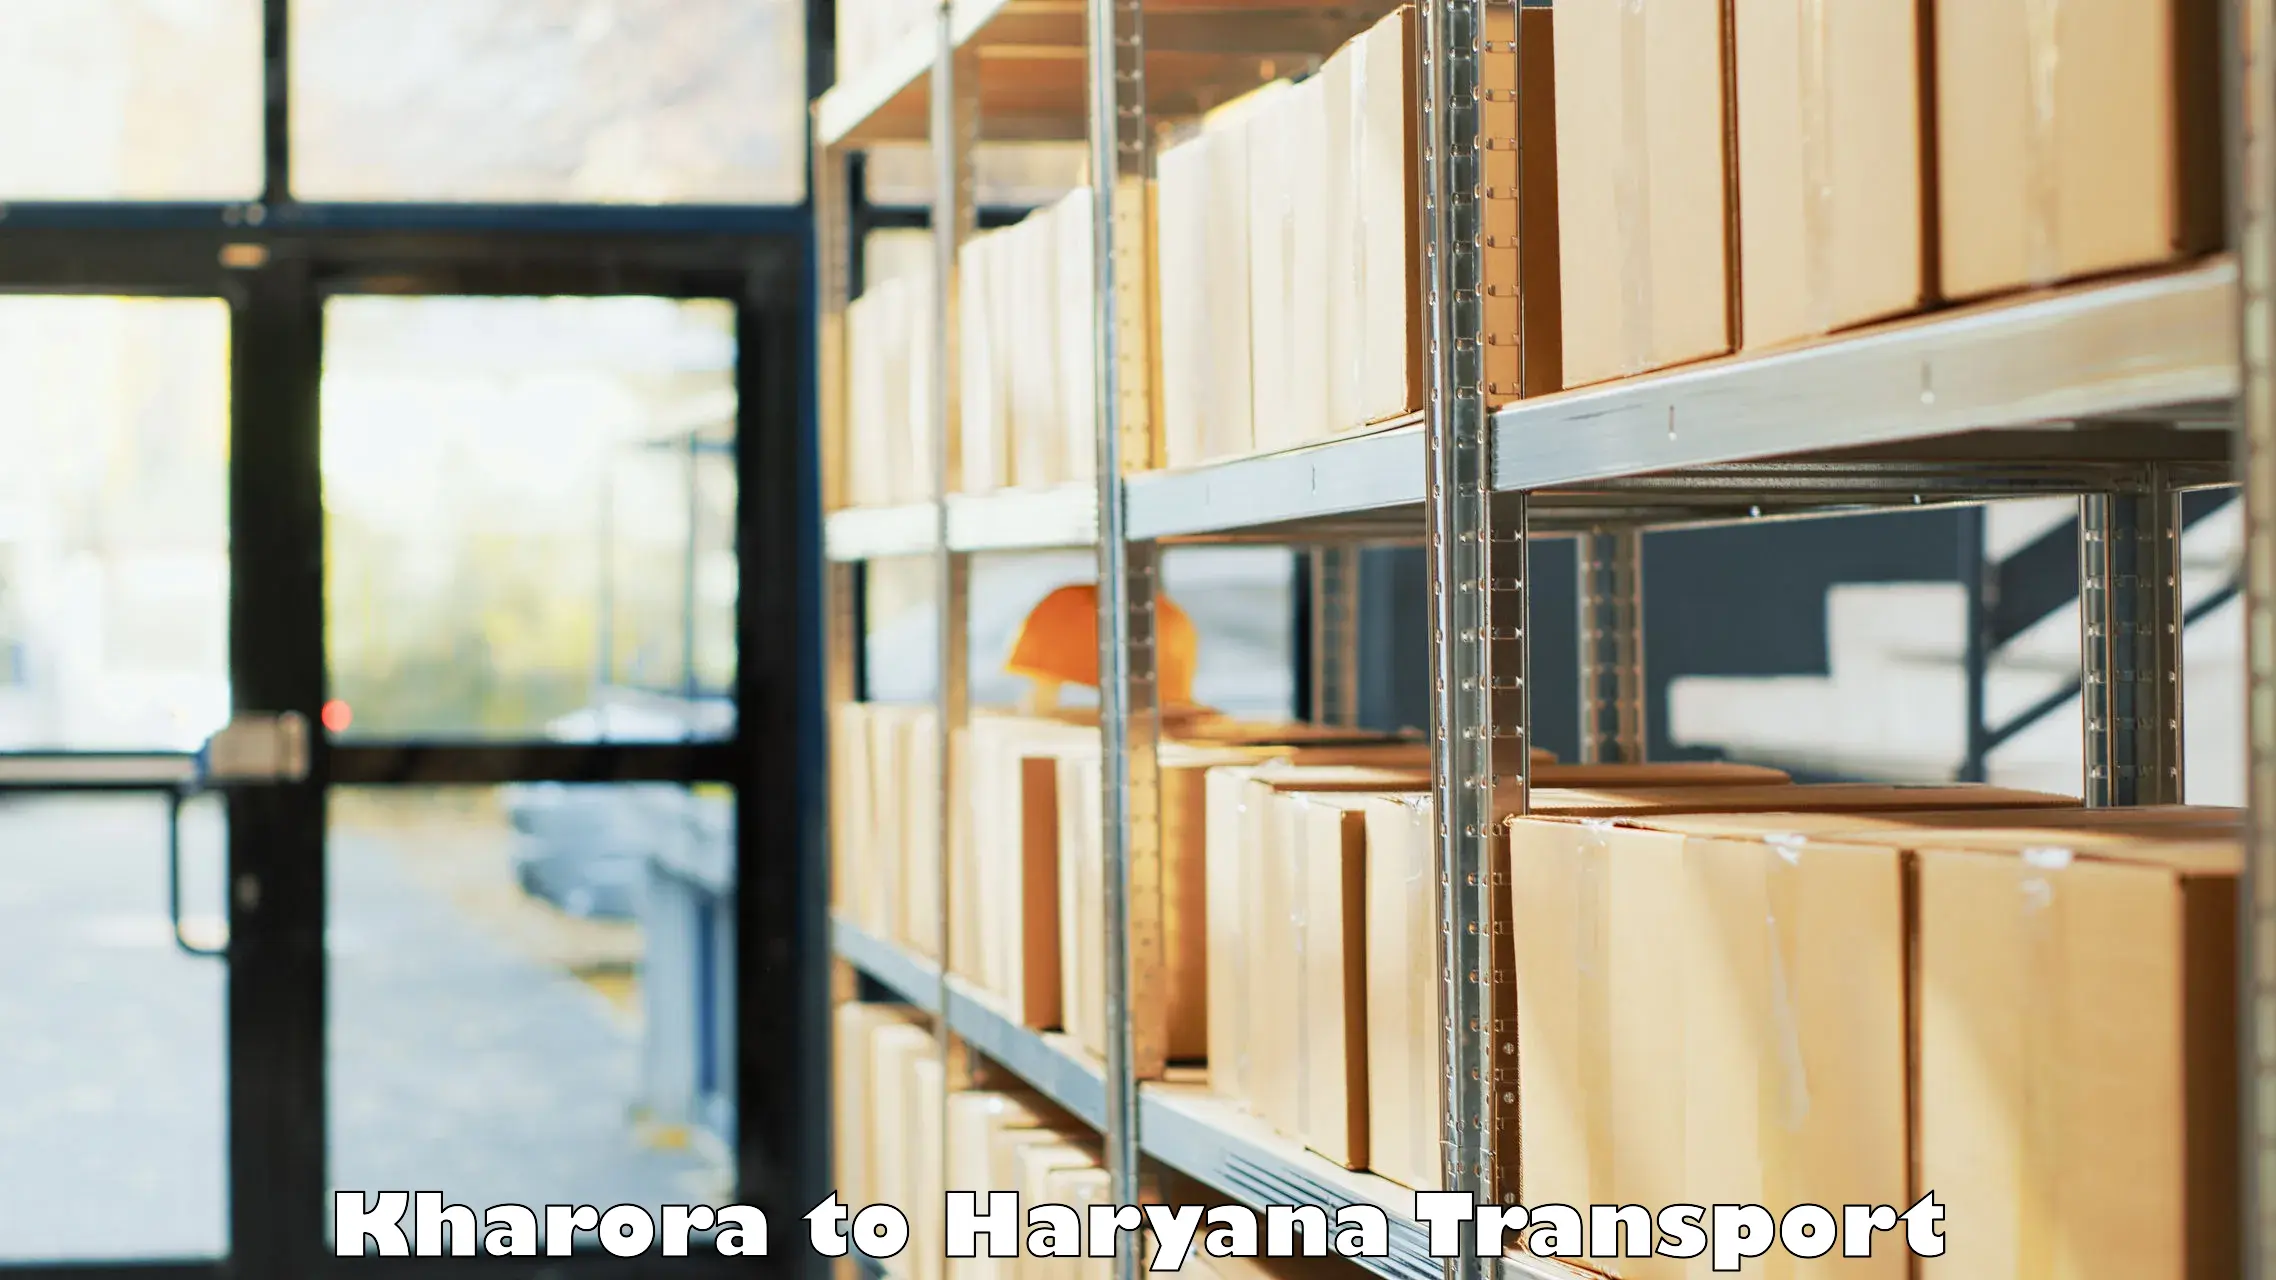 Container transport service Kharora to Narwana